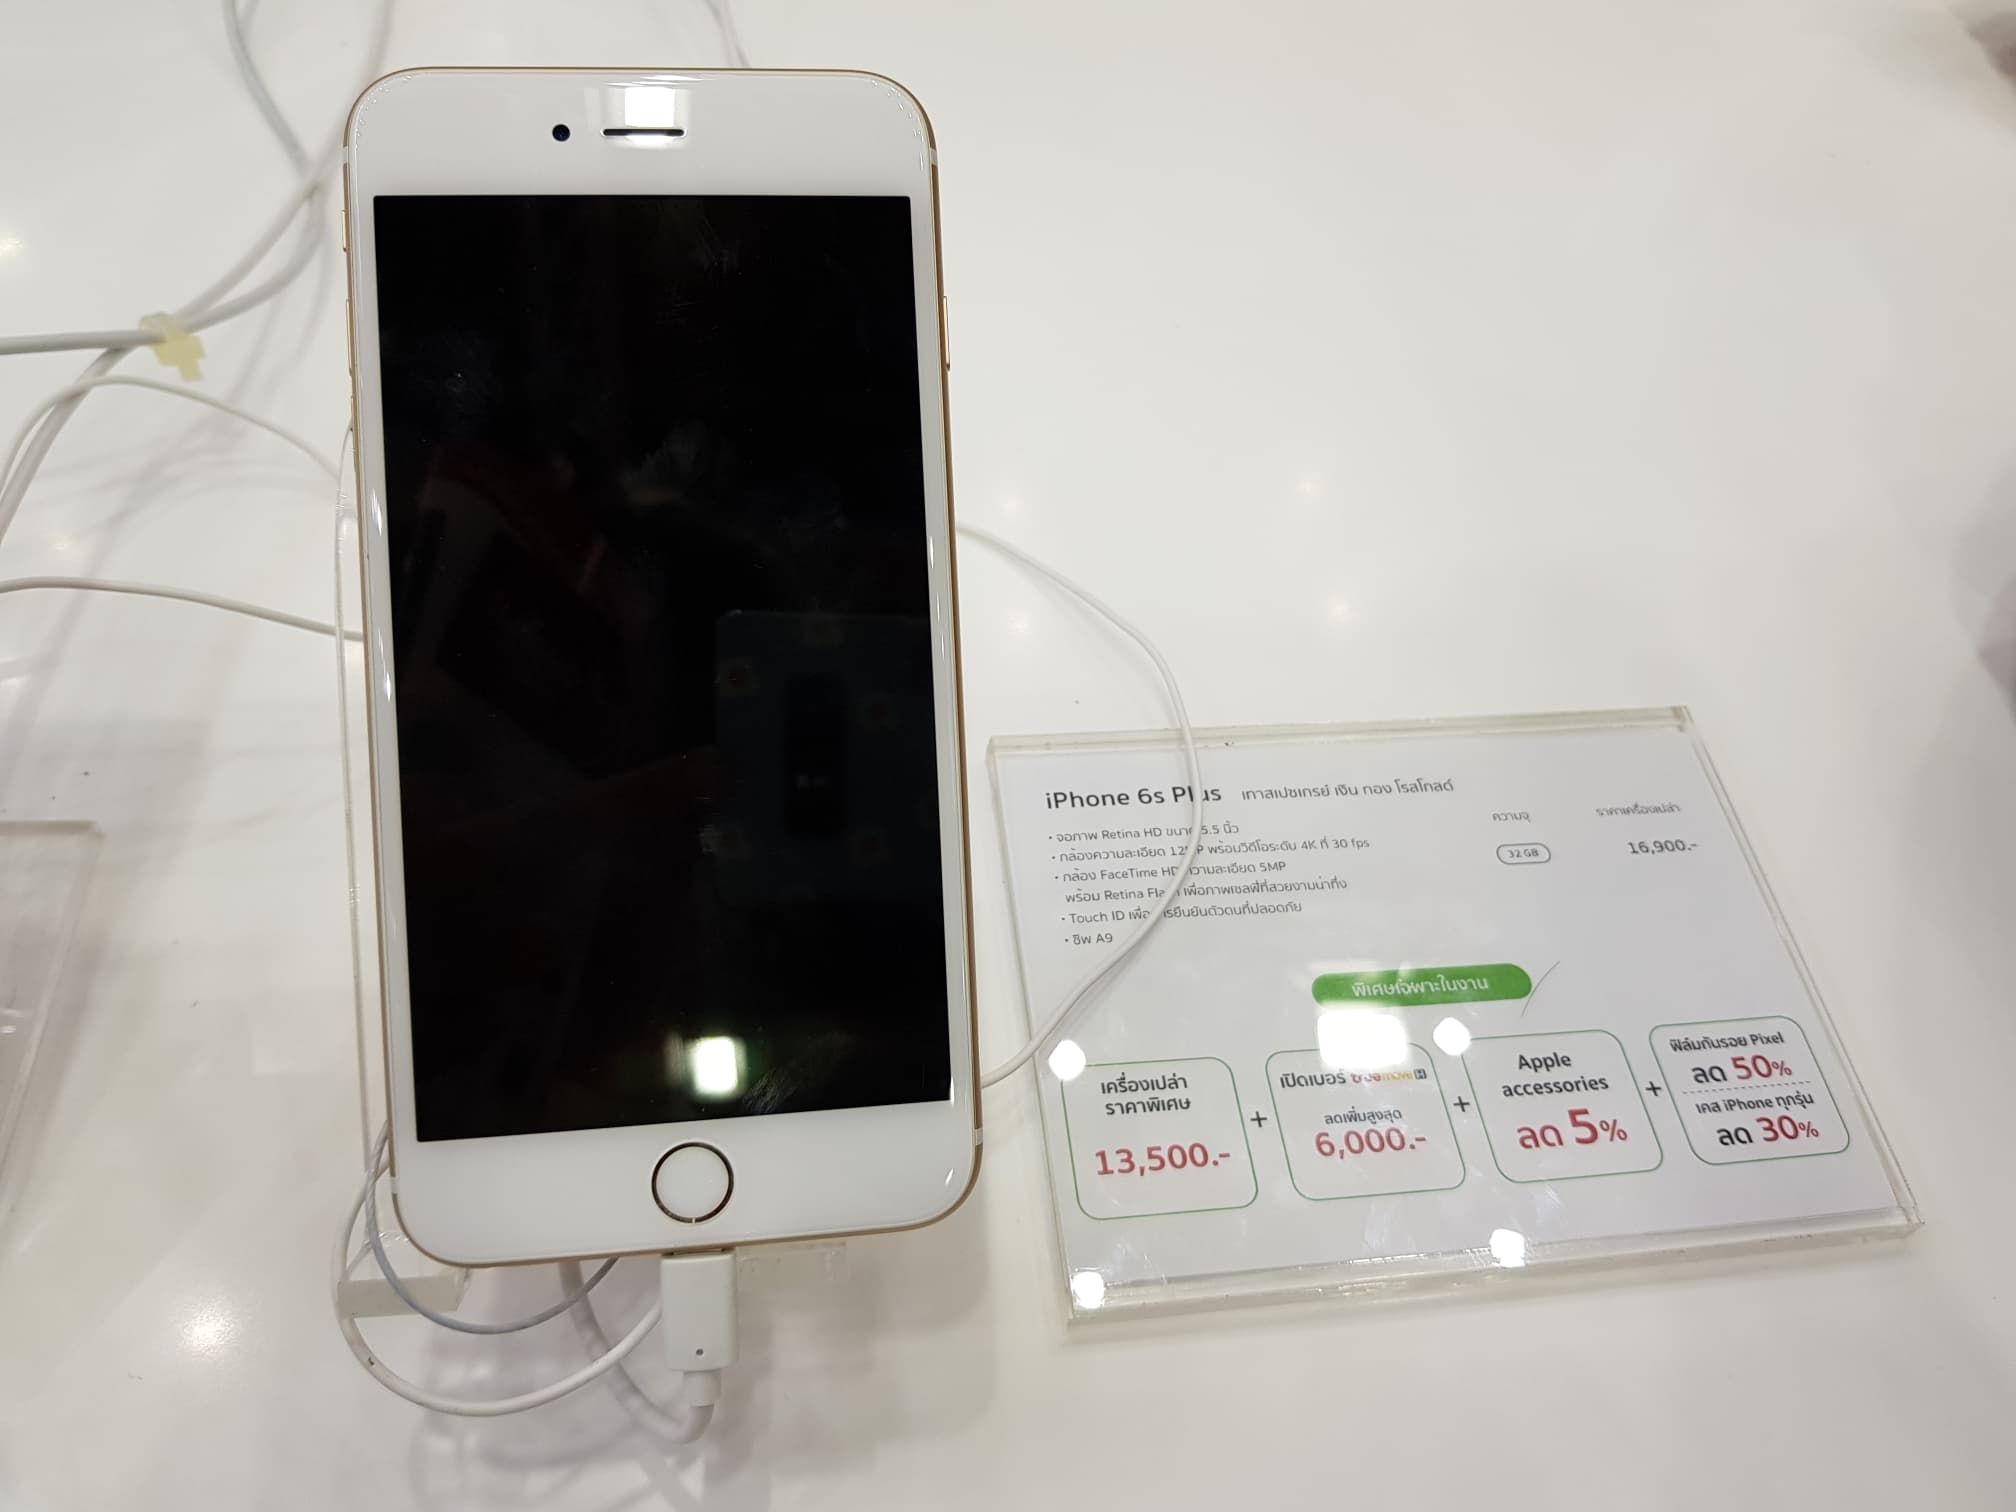 รวมโปรโมชั่น iPhone ลดราคากันดุเดือด ในงาน Mobile Expo ไบเทคบางนา เริ่มต้นแค่ 2,900 บาท